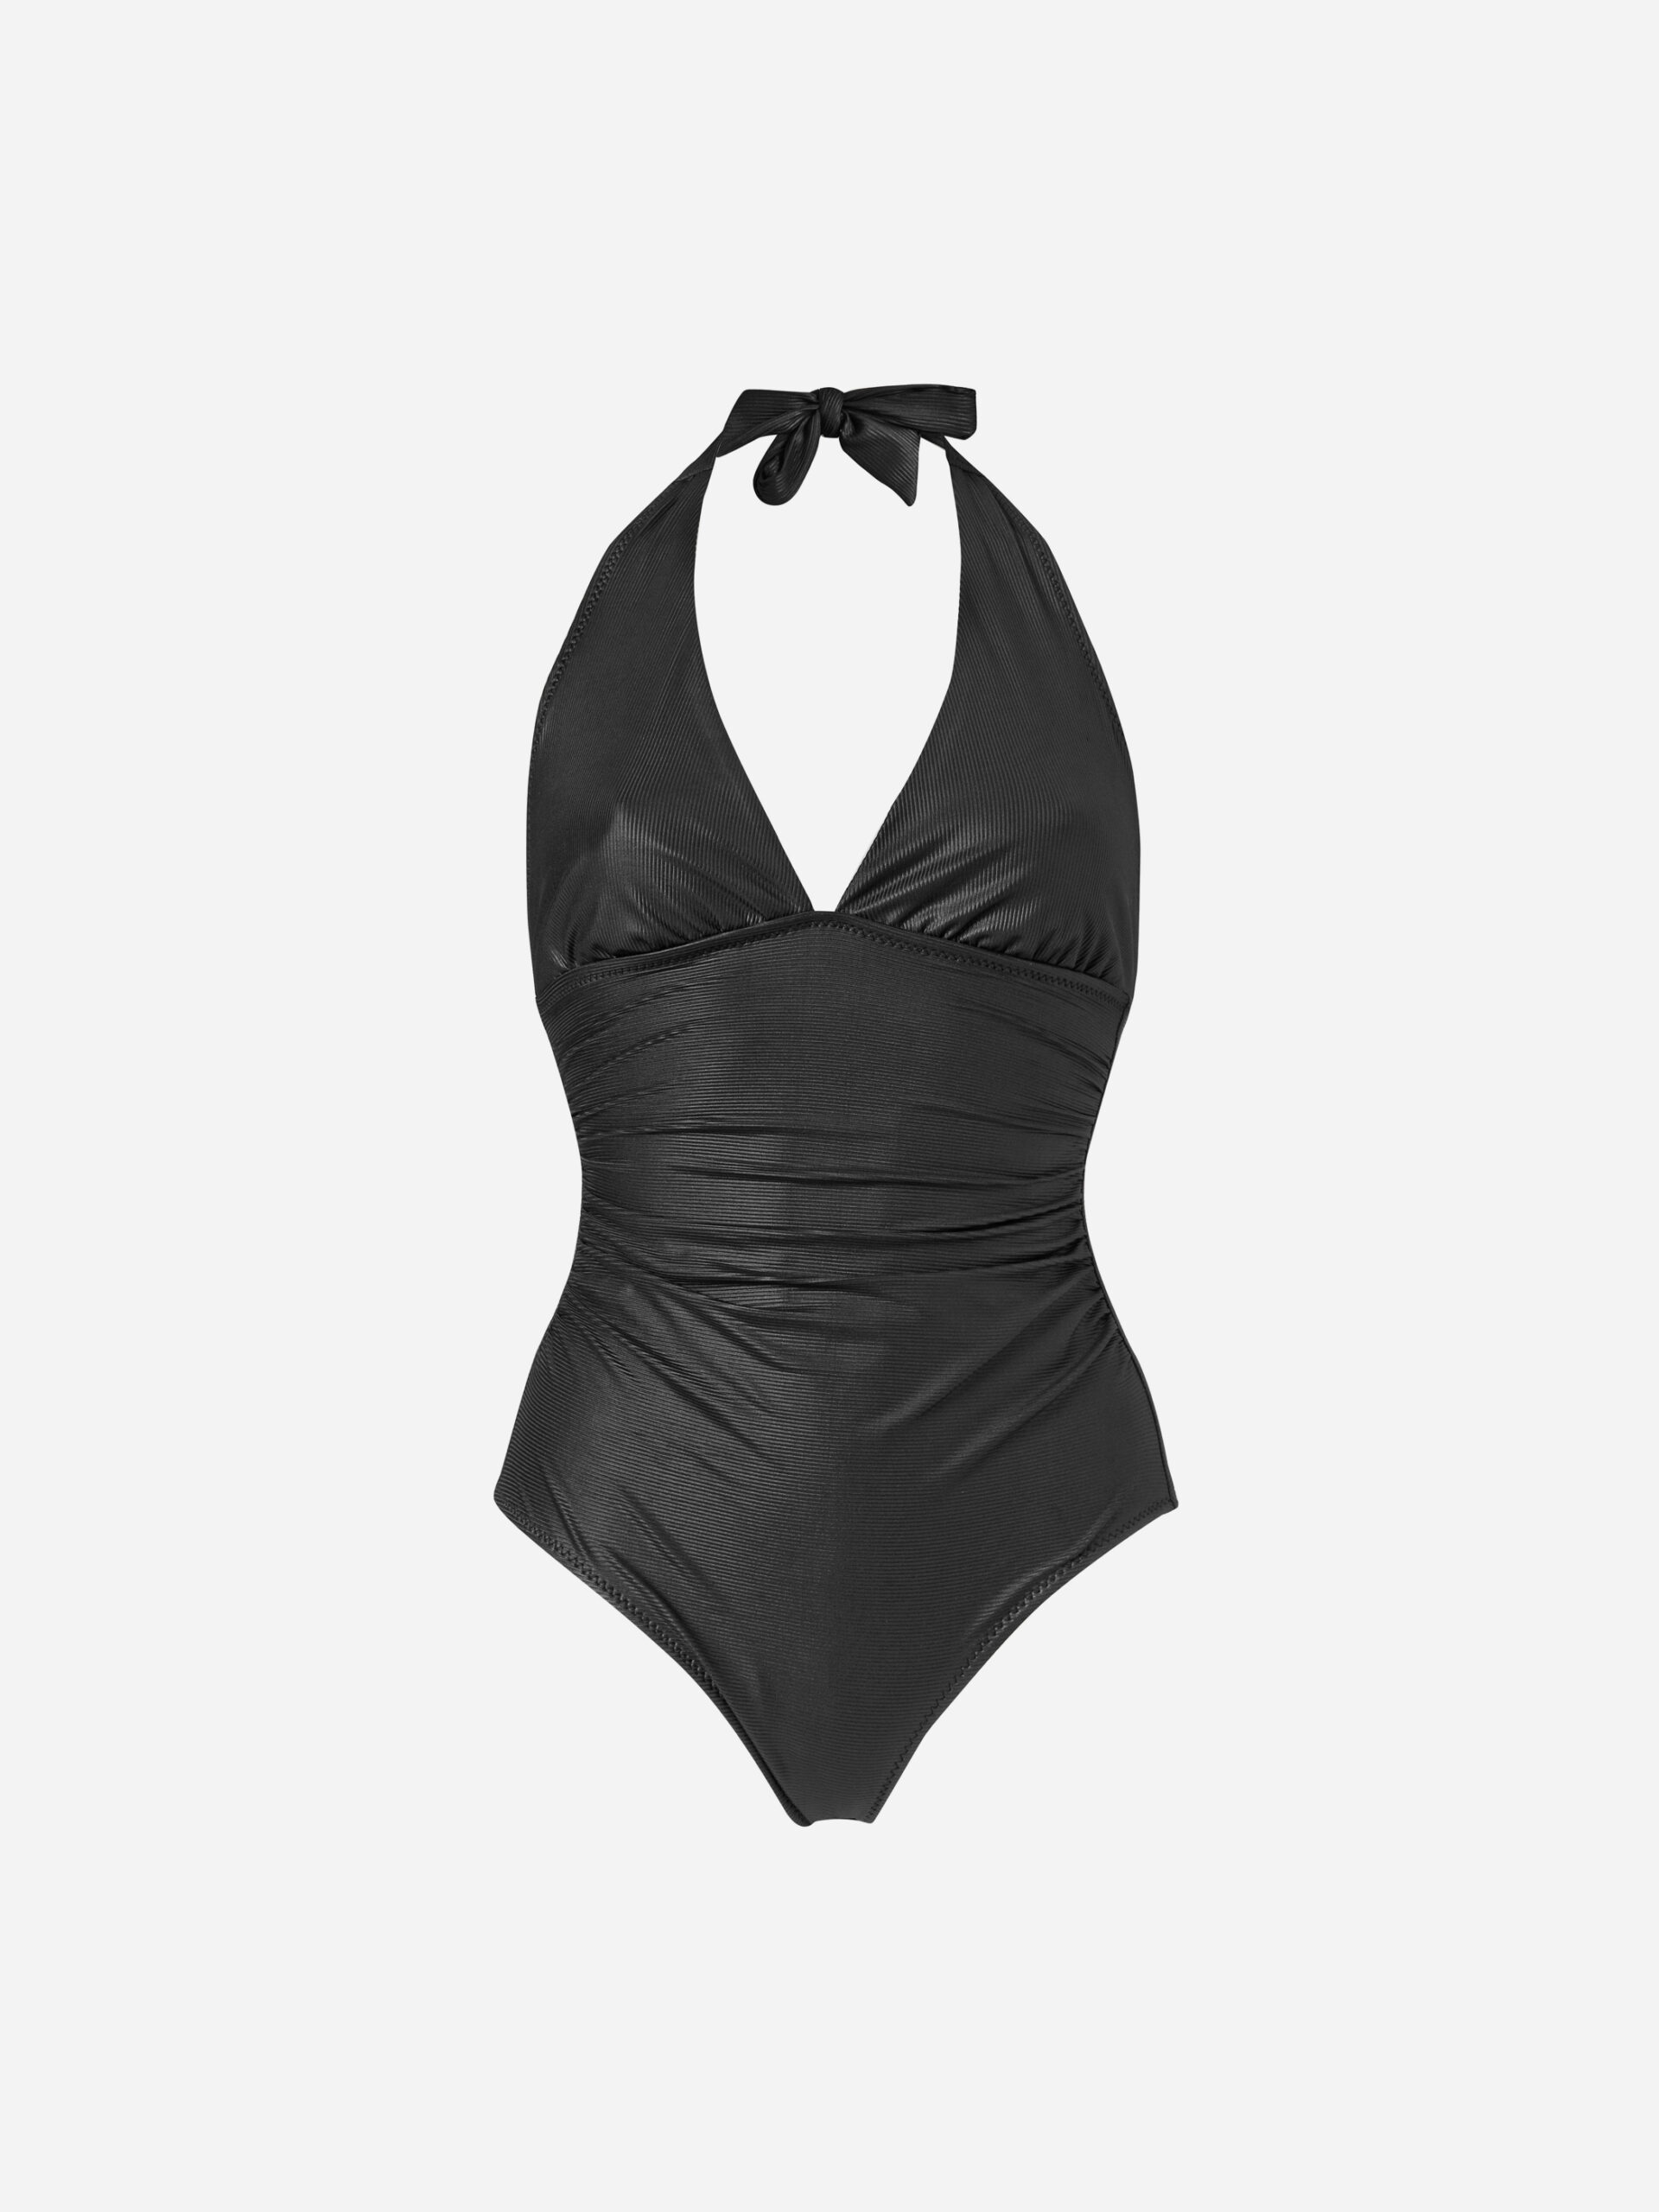 Sofie Black Matte Swimsuit - Shop - Matchbox